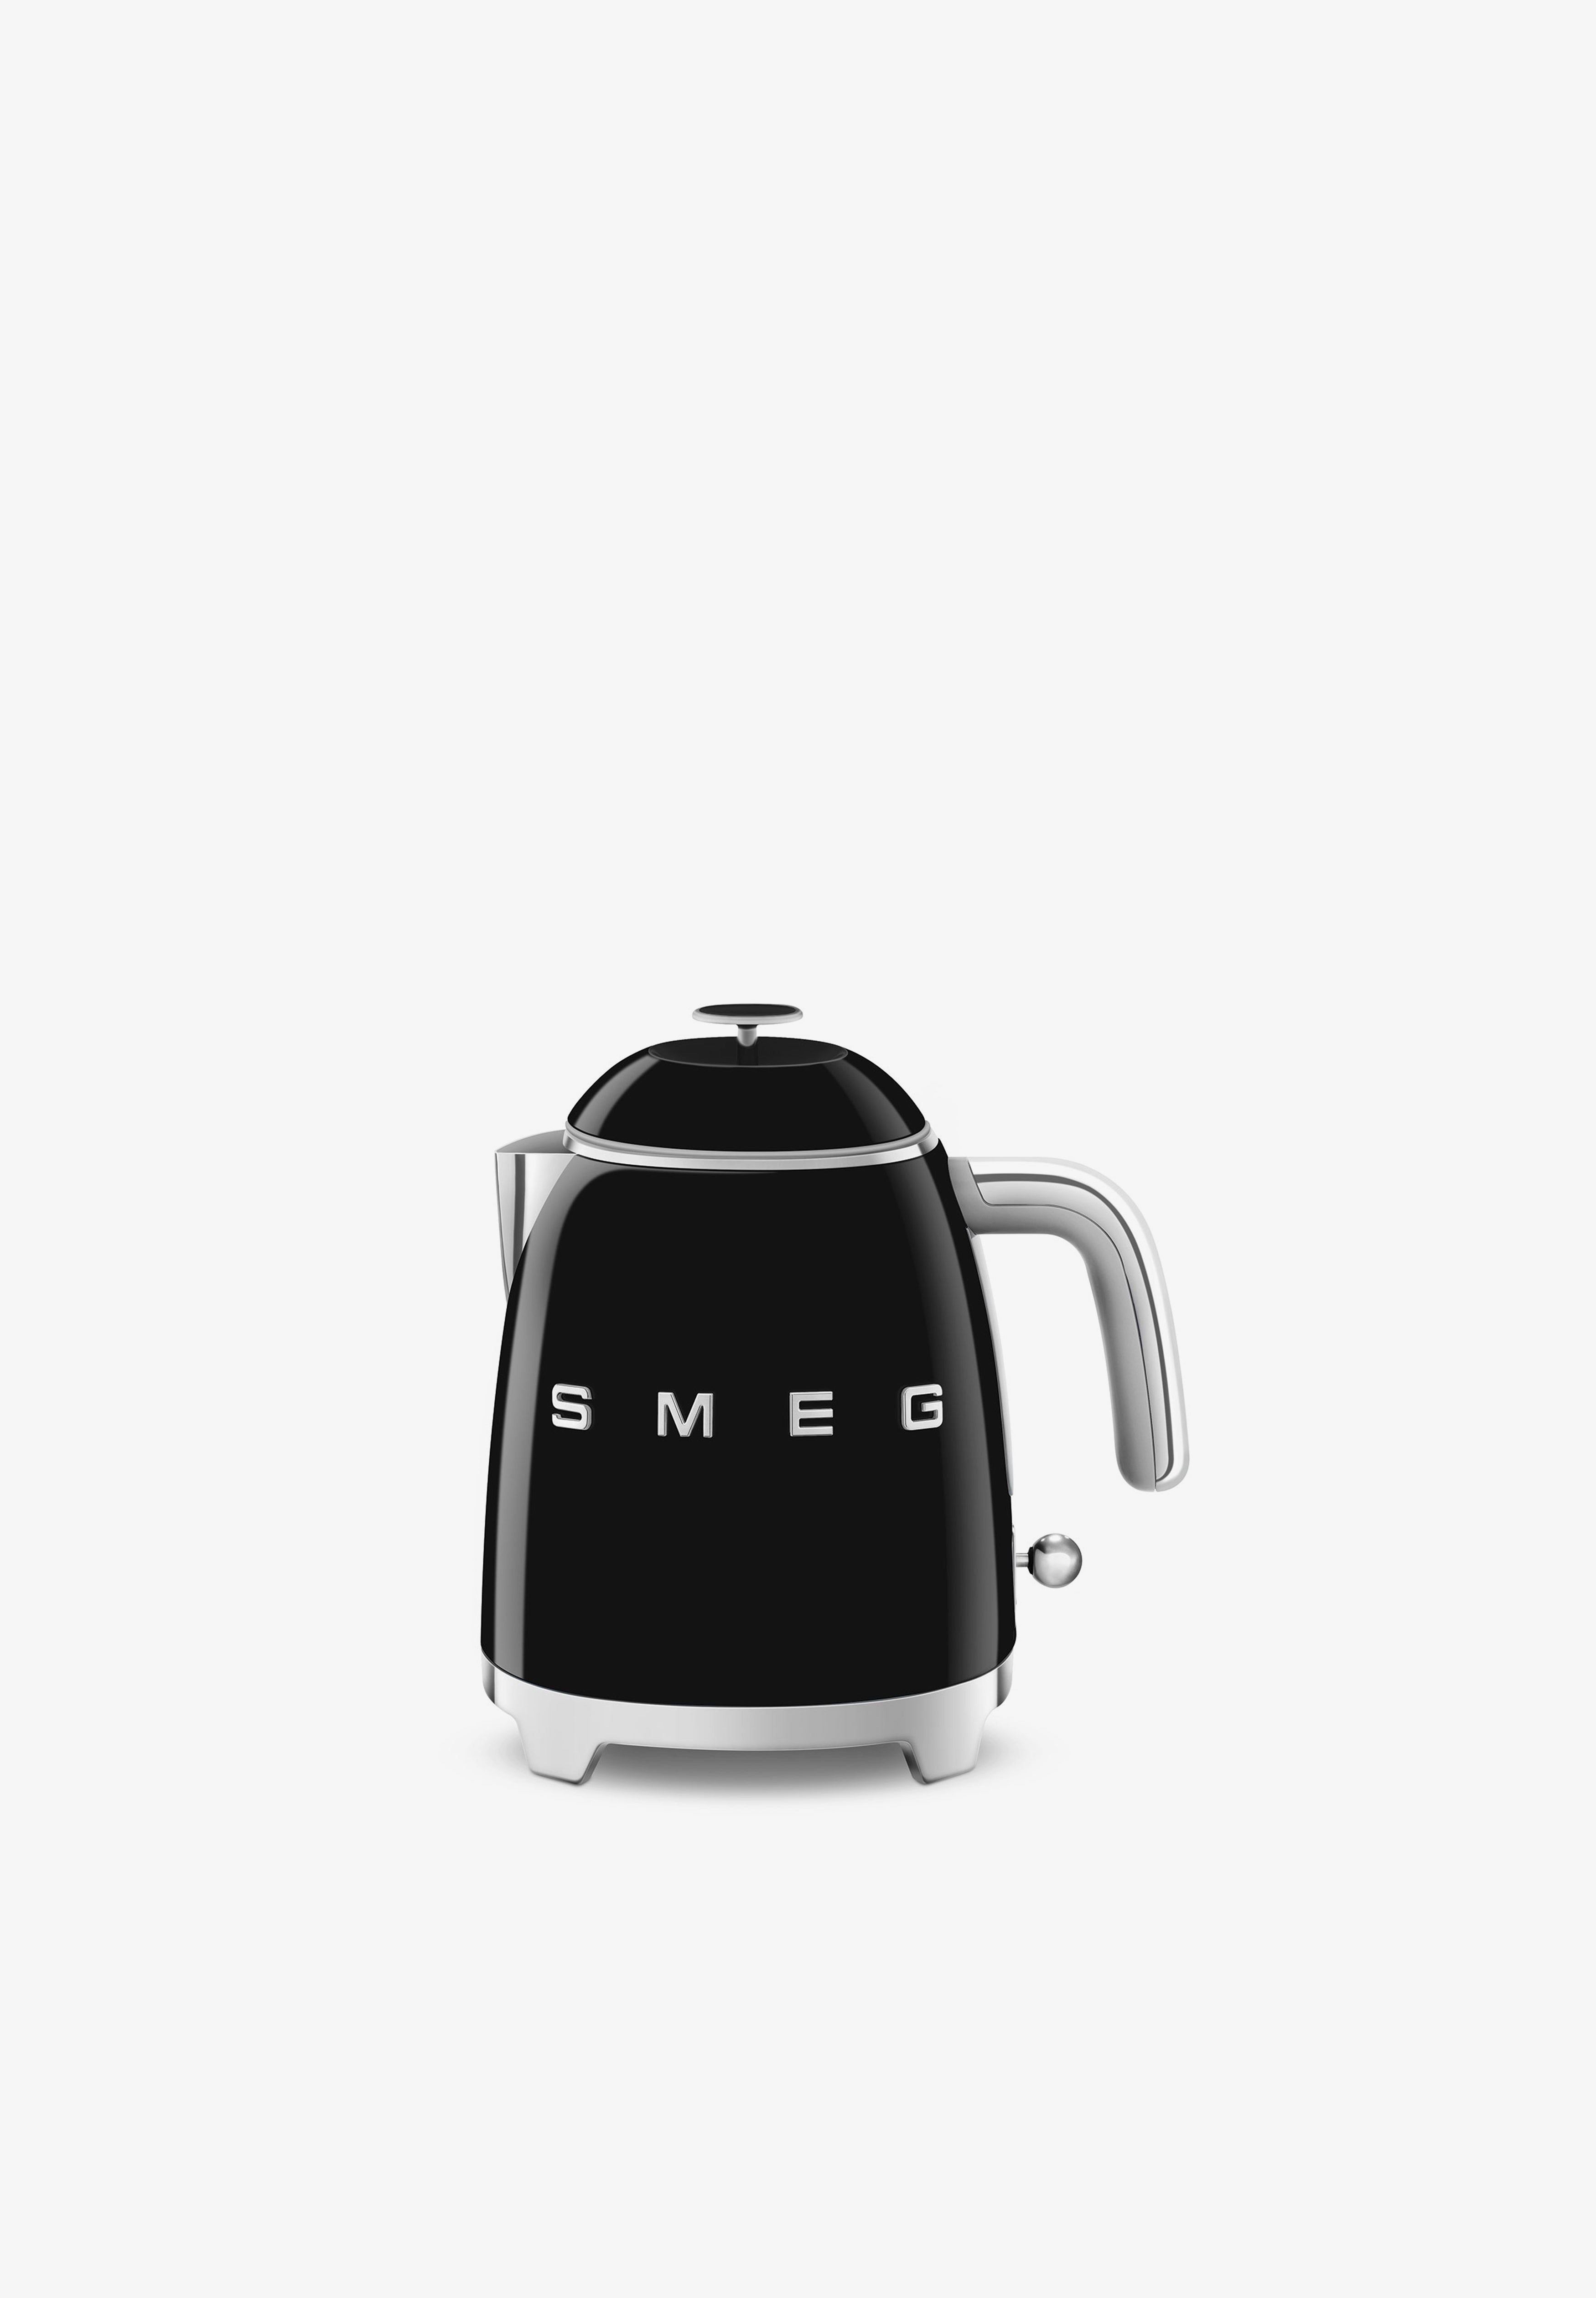 Smeg España - Con su aspecto elegante y colorido, el mini hervidor Smeg  KLF05 de la línea 50 Style es un objeto icónico con un diseño inconfundible  ❤️ #smeg #smeg50style #smegspain